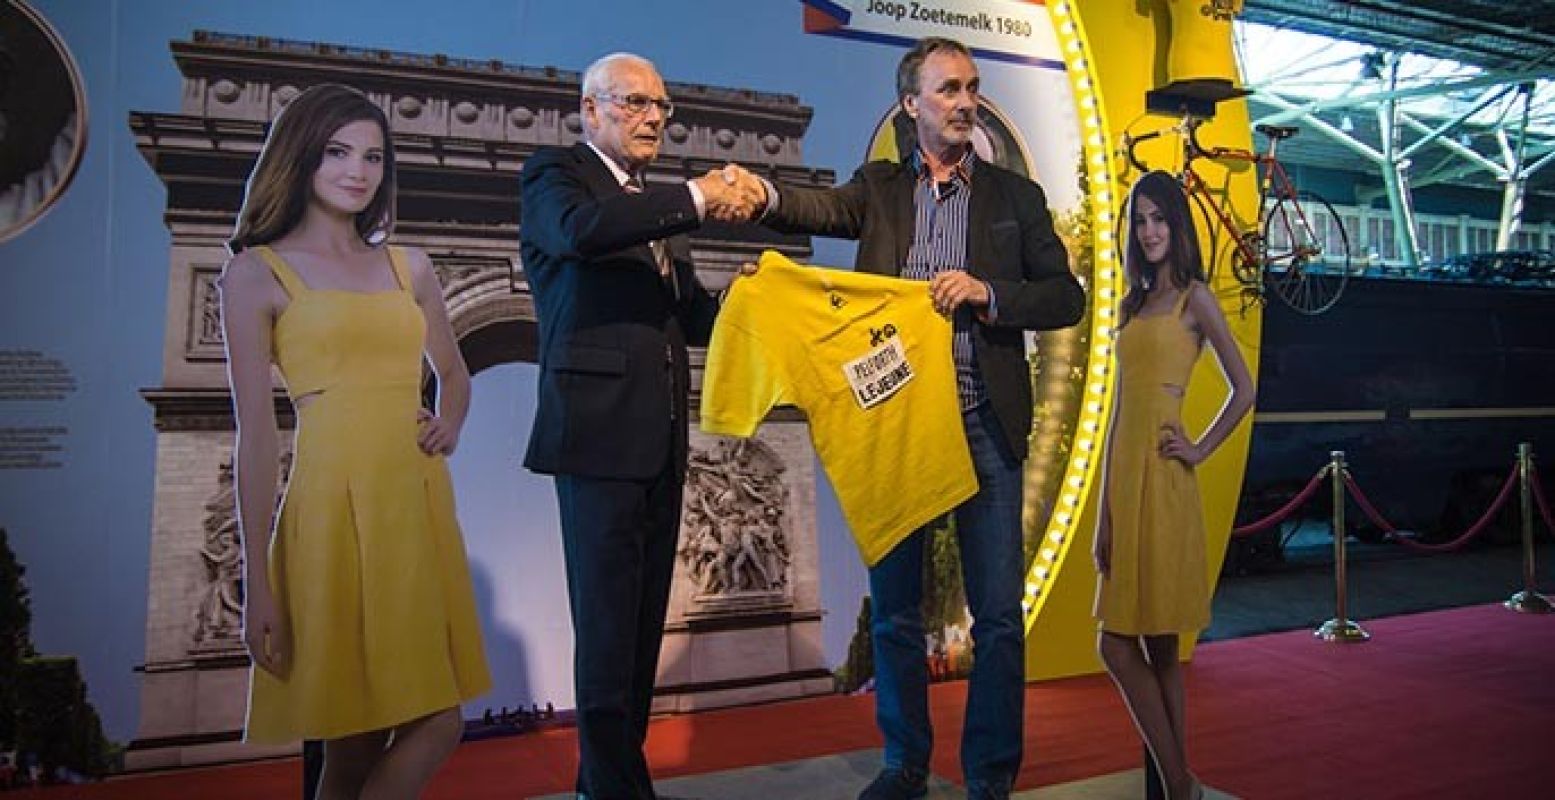 Jan Janssen overhandigt zijn eigen gele trui aan het Spoorwegmuseum. Foto: Spoorwegmuseum